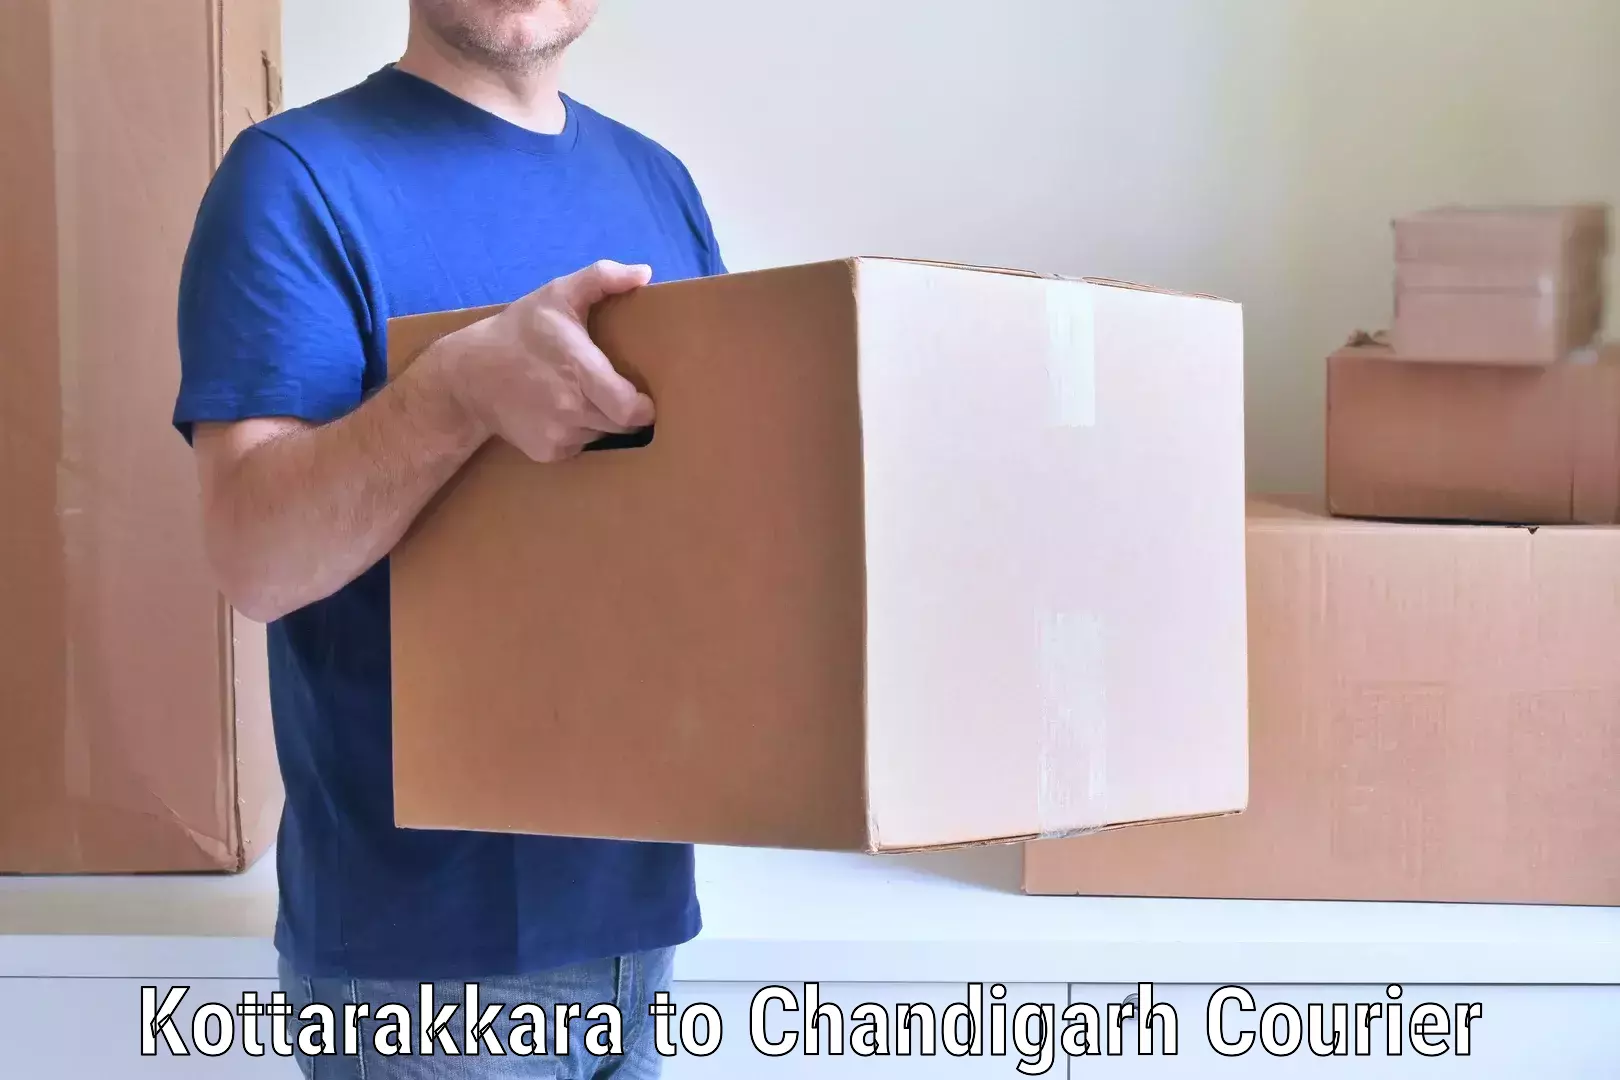 Household moving experts Kottarakkara to Chandigarh